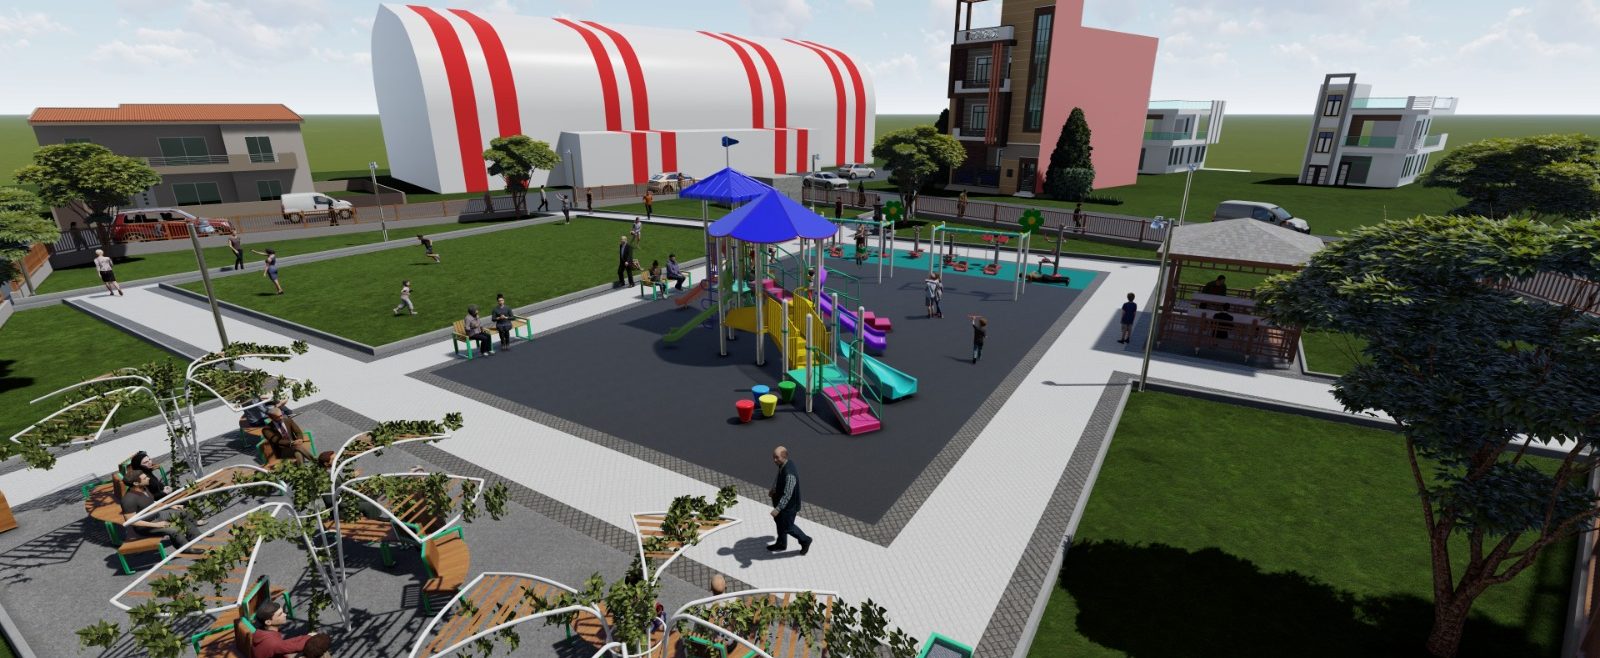 İzmit Belediyesi Alikahya’da  öz kaynaklarıyla yeni park inşa ediyor